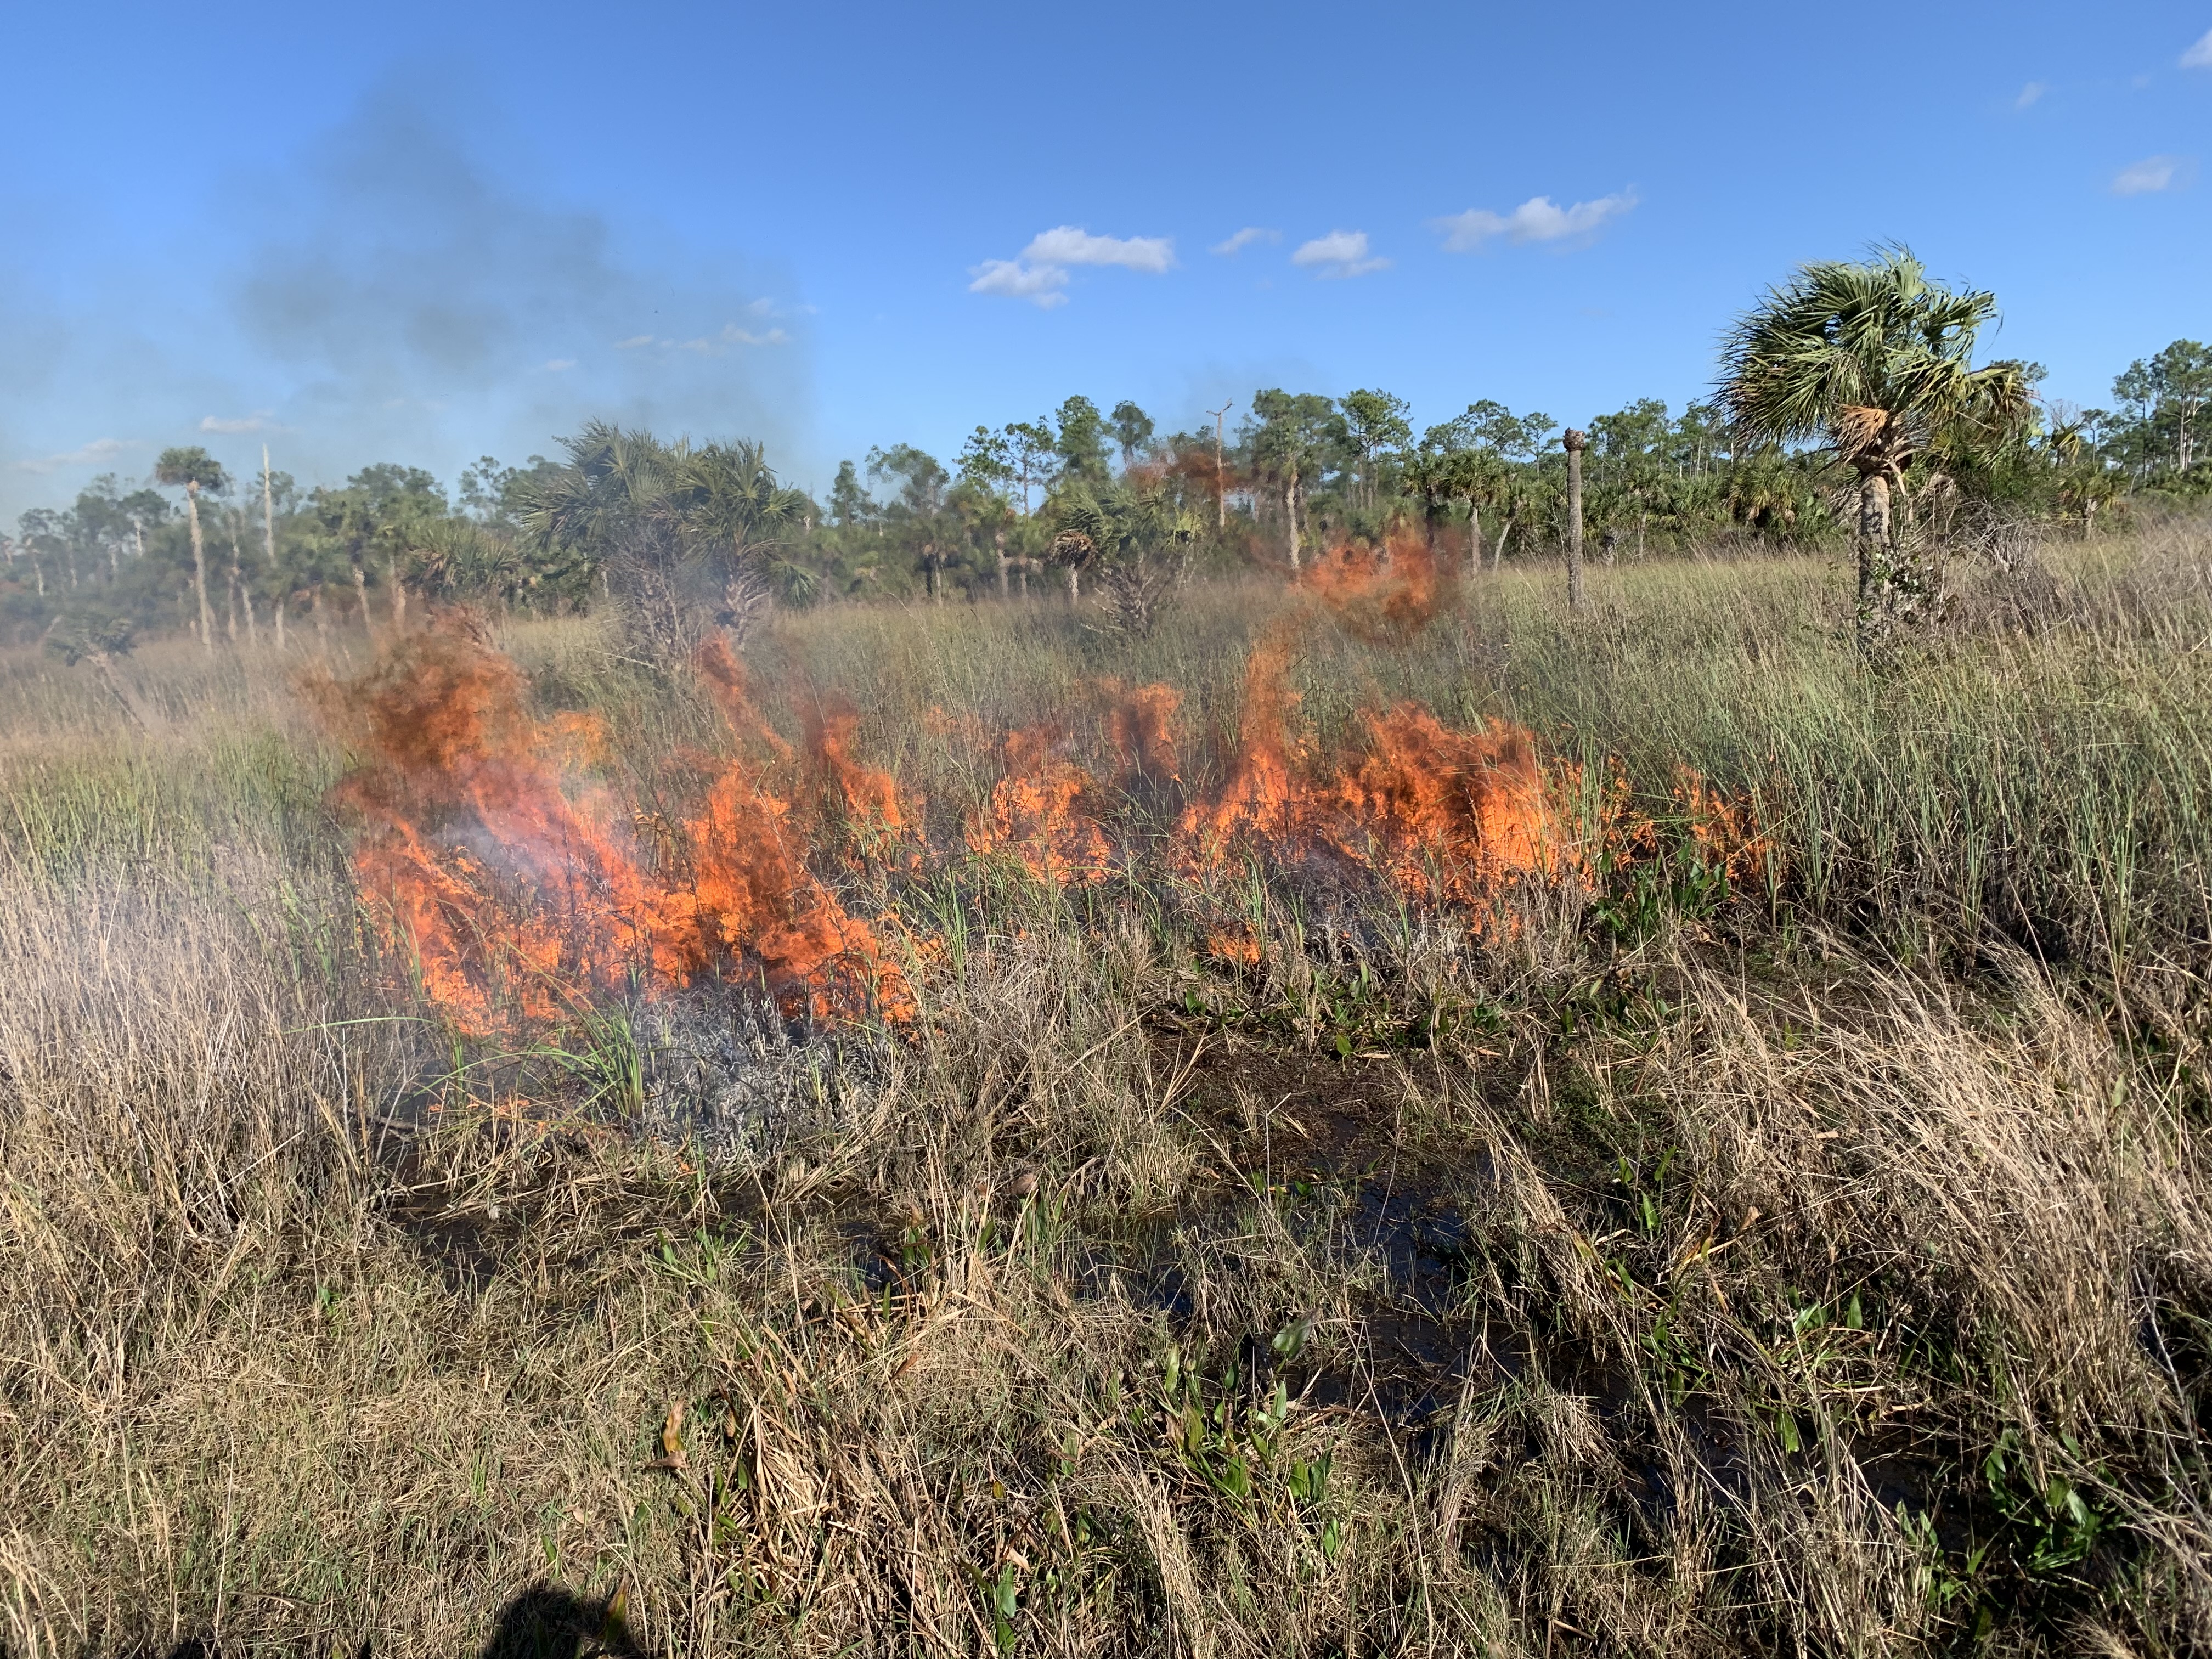 View of fire in marsh habitat. 